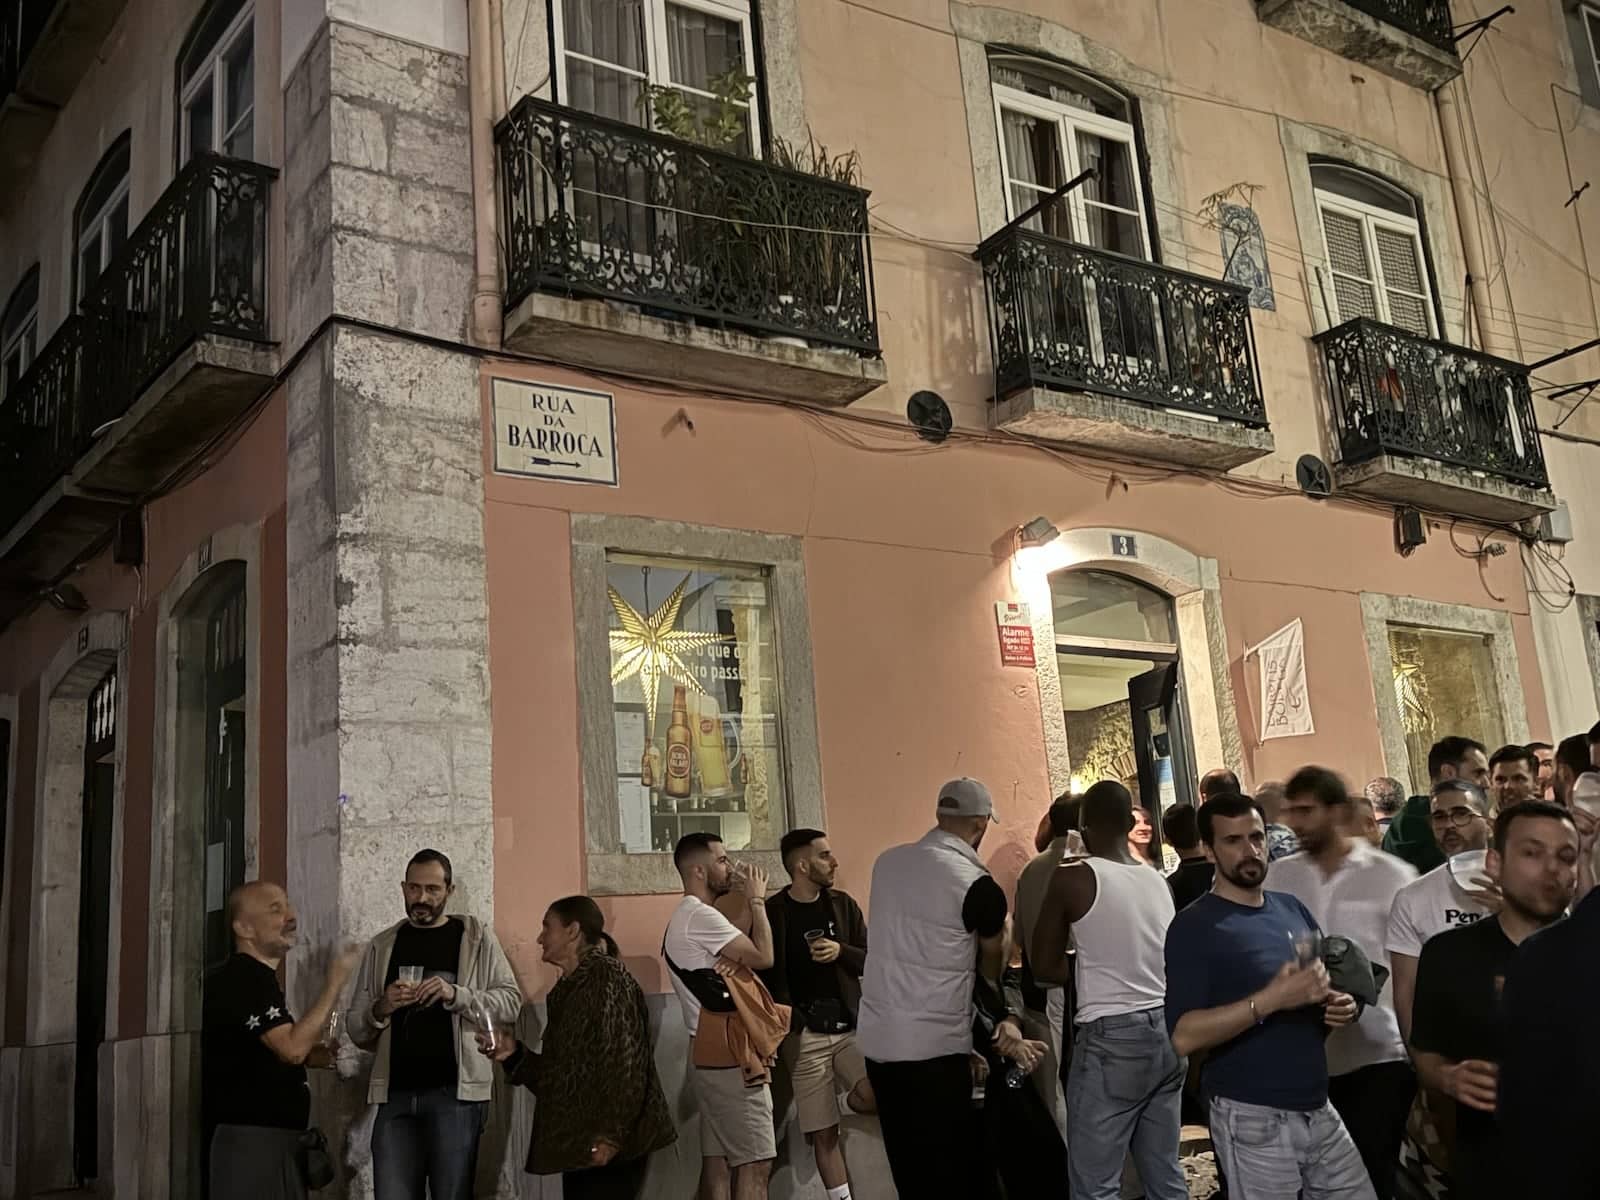 Rua da Barroca the main gay street of Lisbon.